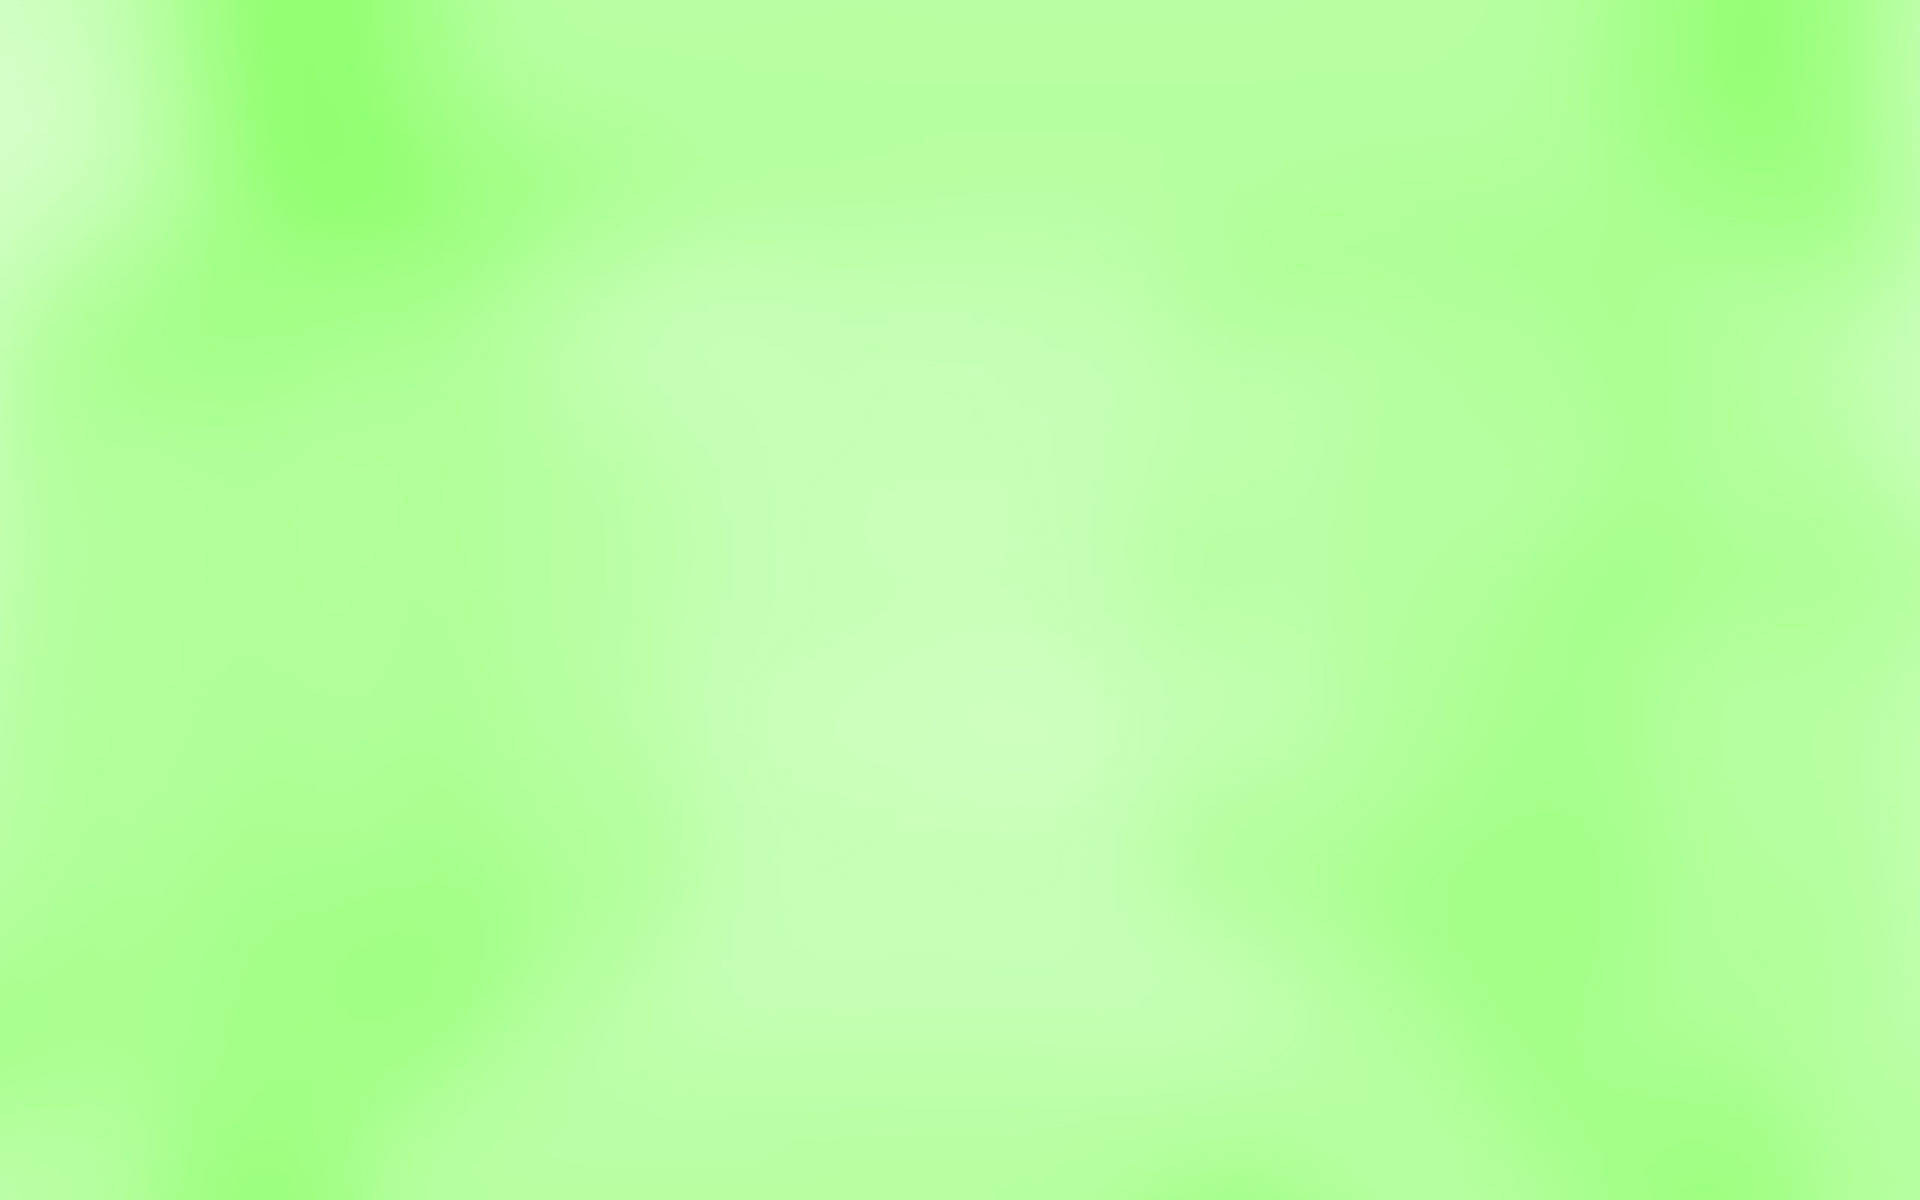 Free Light Green Plain Wallpaper Downloads, [100+] Light Green Plain  Wallpapers for FREE 